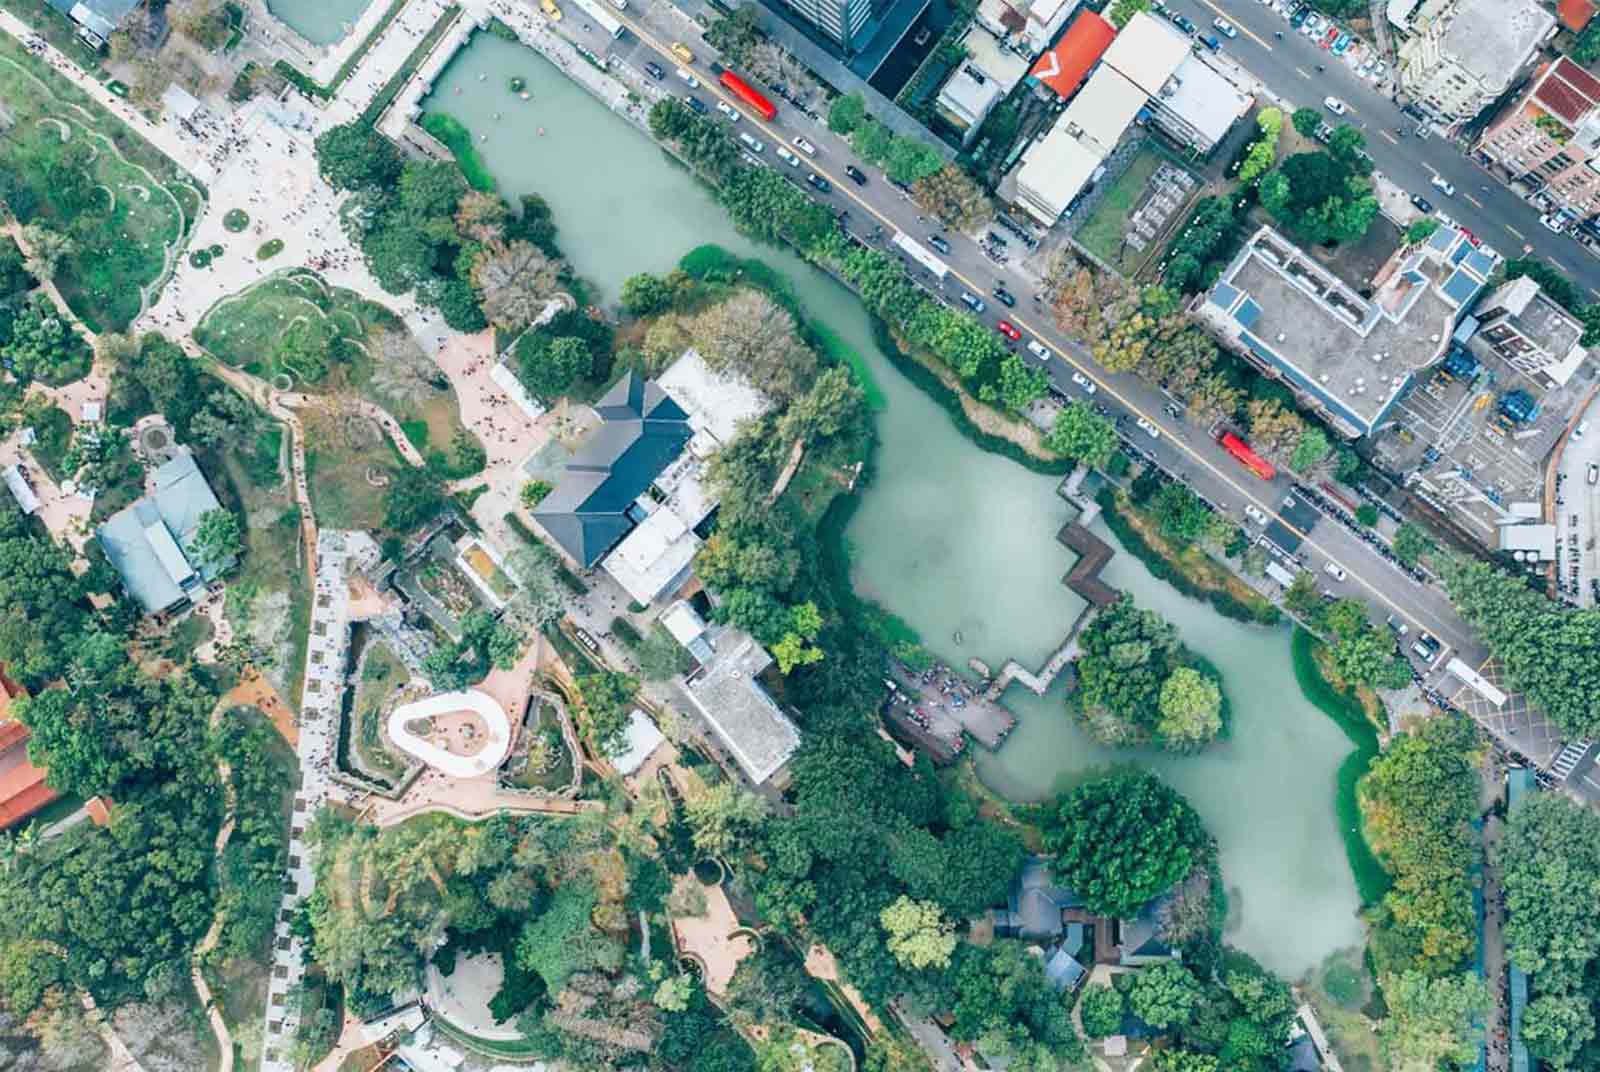 新竹市將新竹科學園區的科技力轉為市政能量，改善市民生活品質。